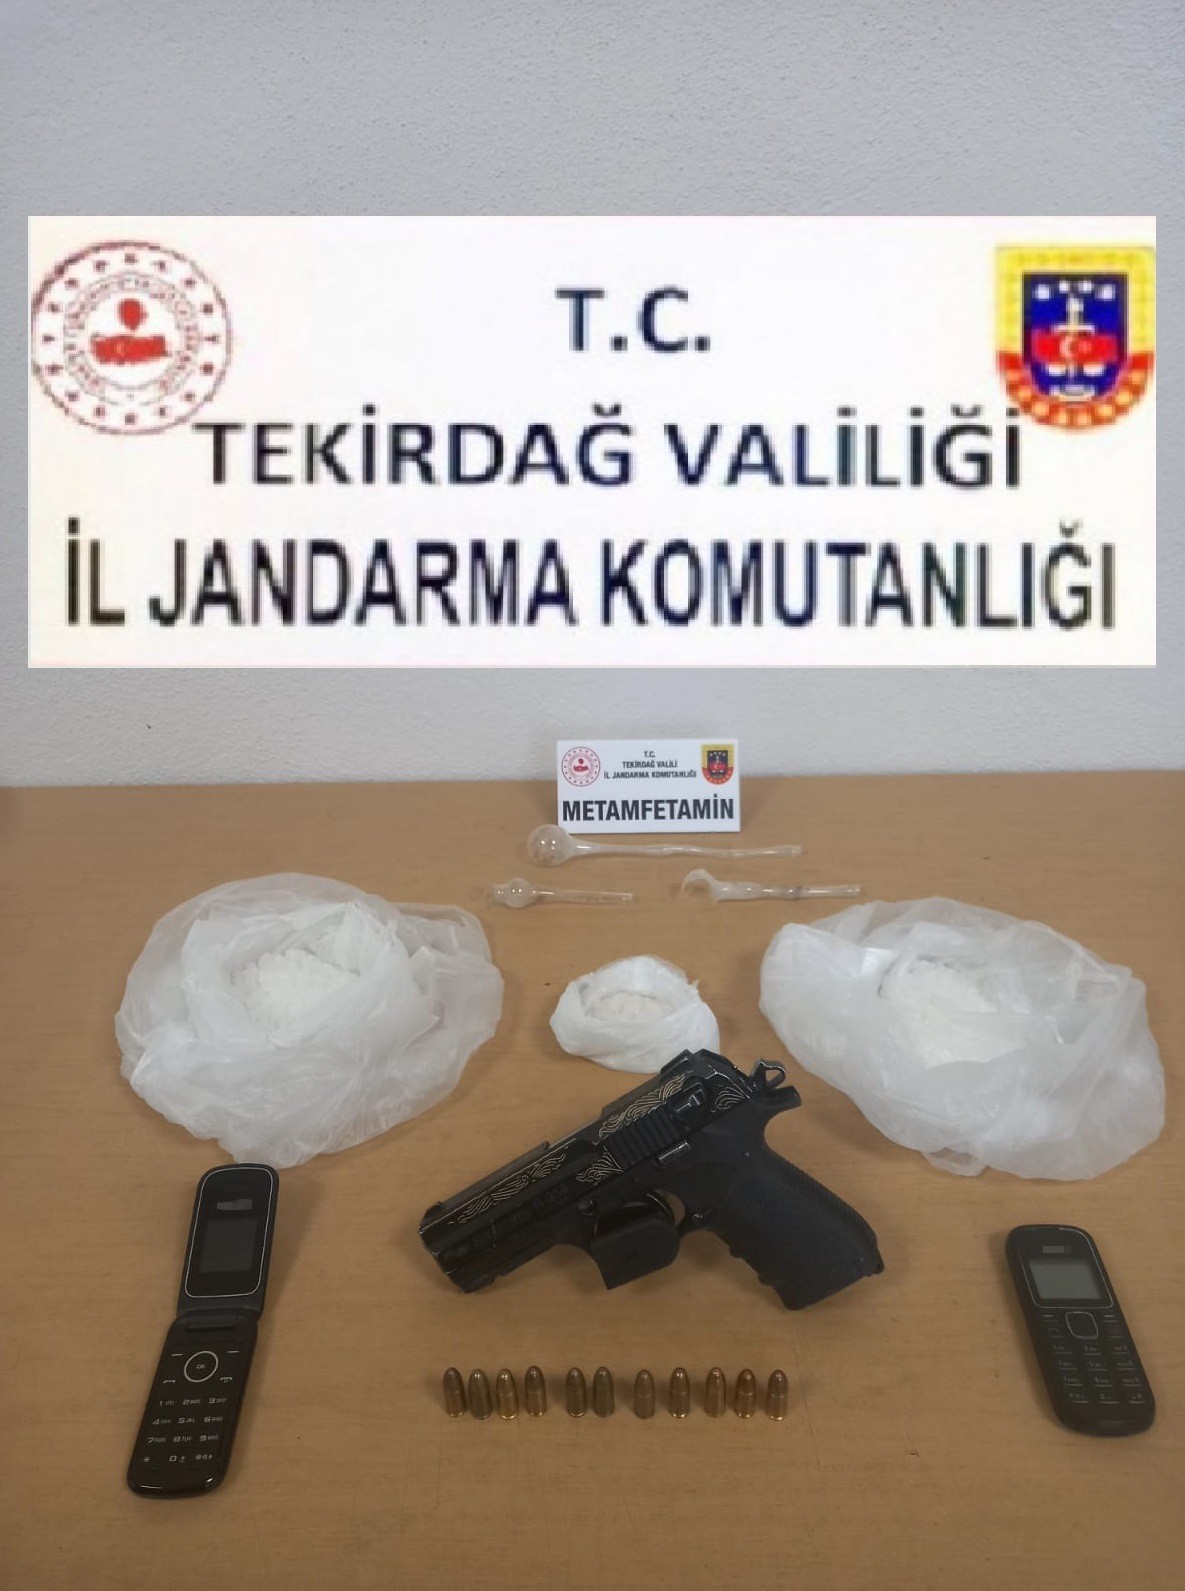 İstanbuldan Tekirdağa Getirilen Uyuşturucu Operasyonla Ele Geçirildi